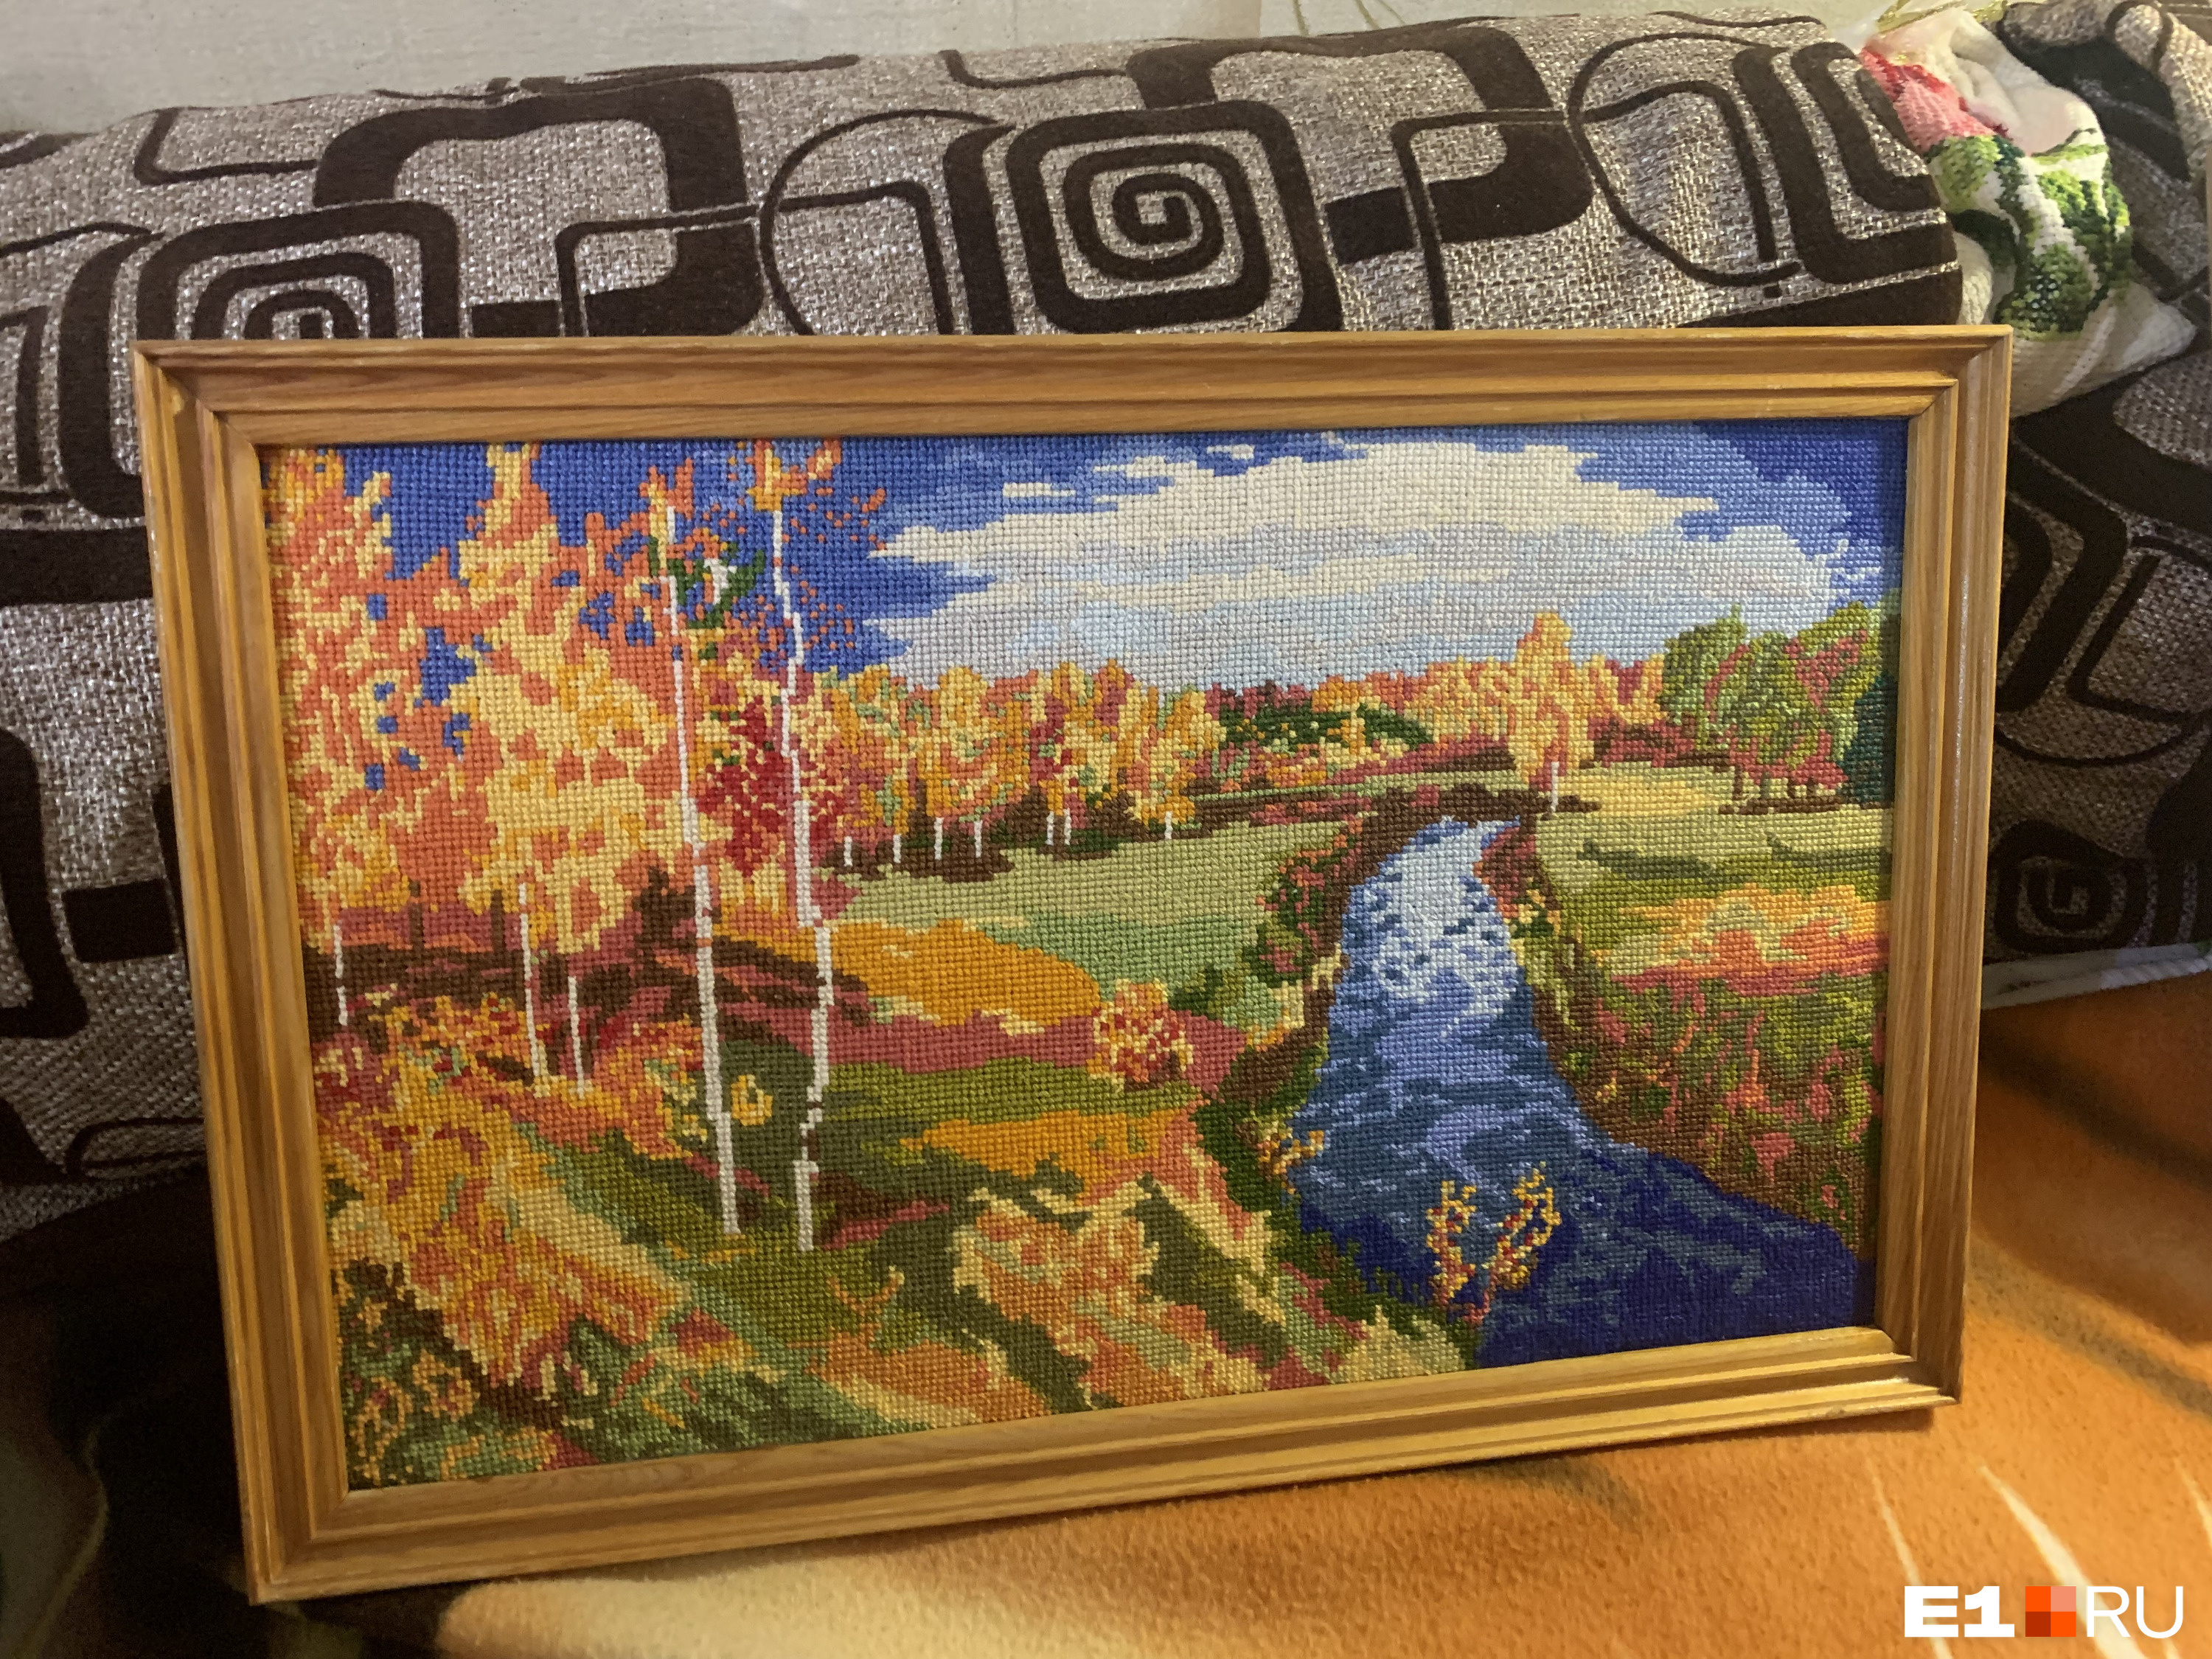 А это пейзаж Исаака Левитана «Золотая осень»